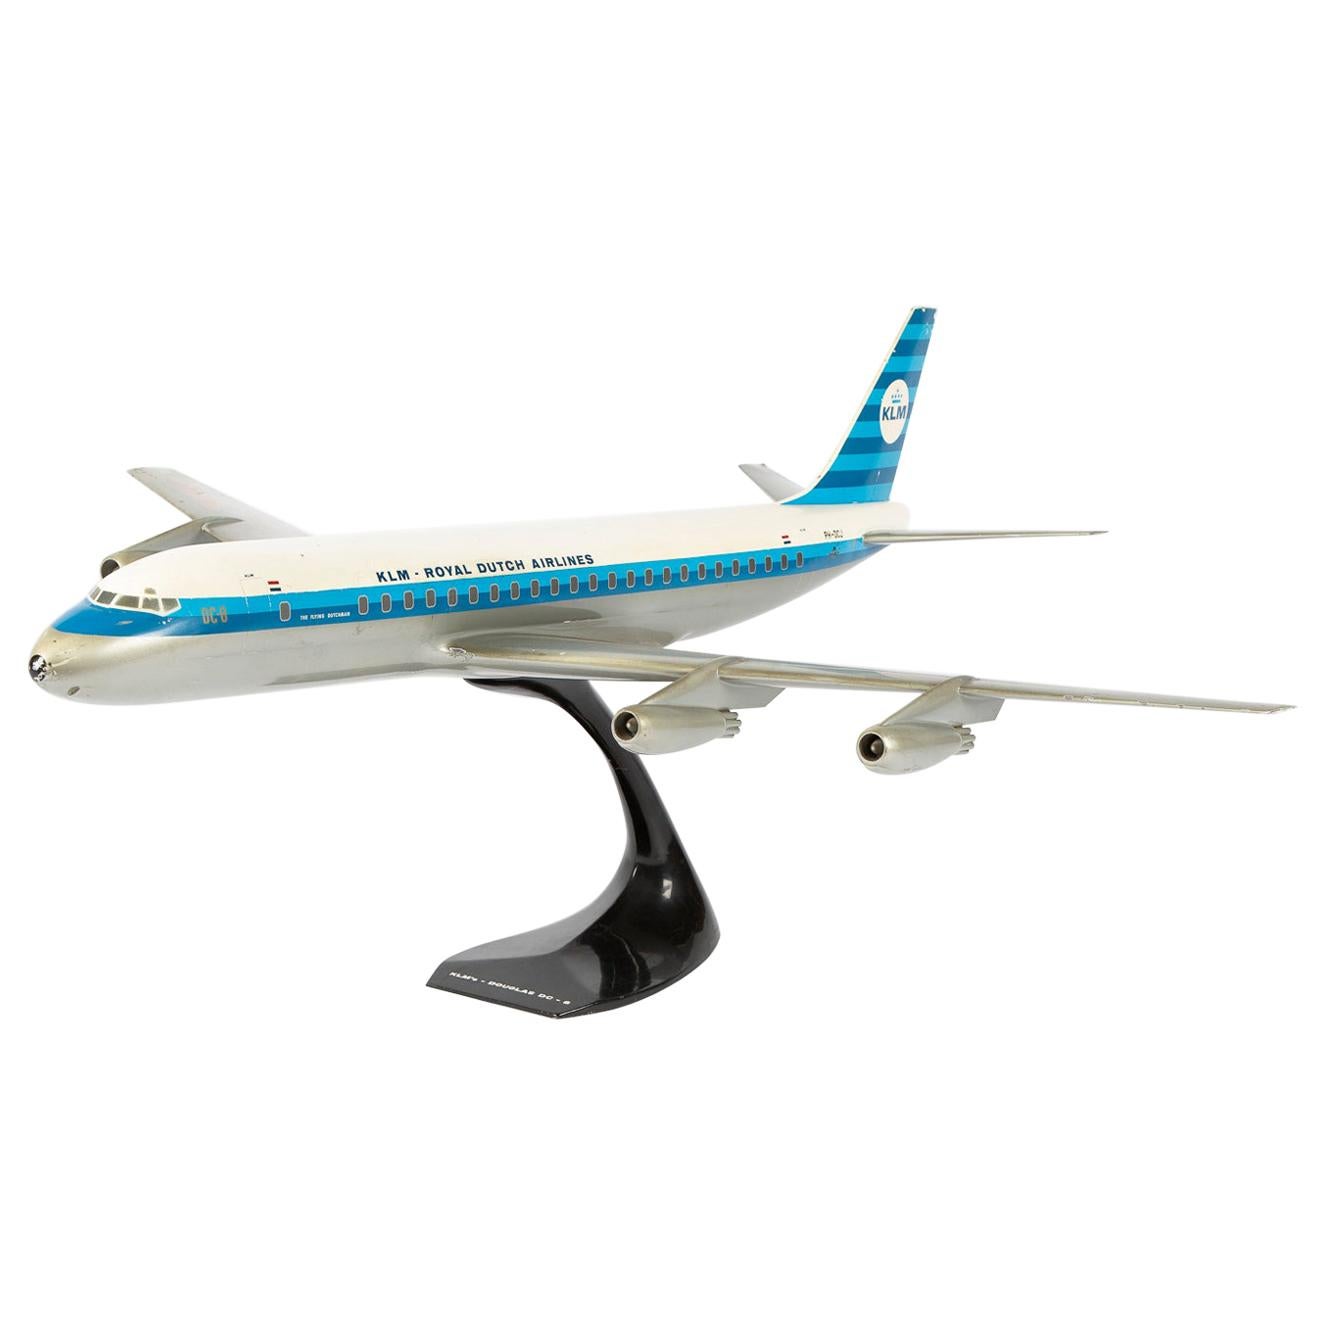 Modèle réduit du KLM DC-8 connu sous le nom de The Flying Dutchman